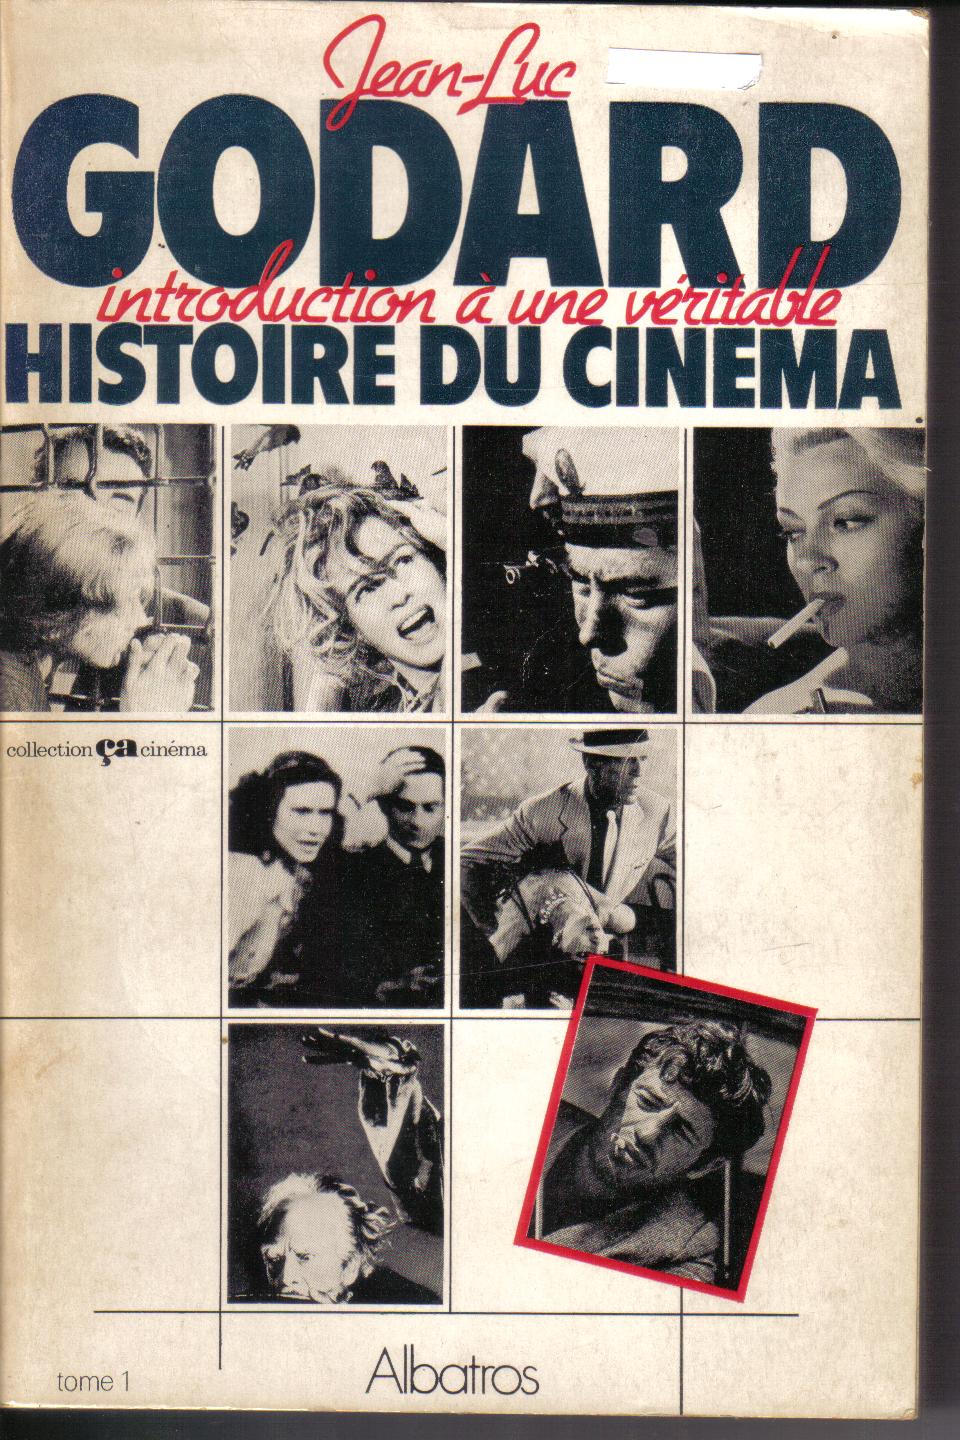 Introduction a une veritable Histoire du CinemaJean-Luc Godard